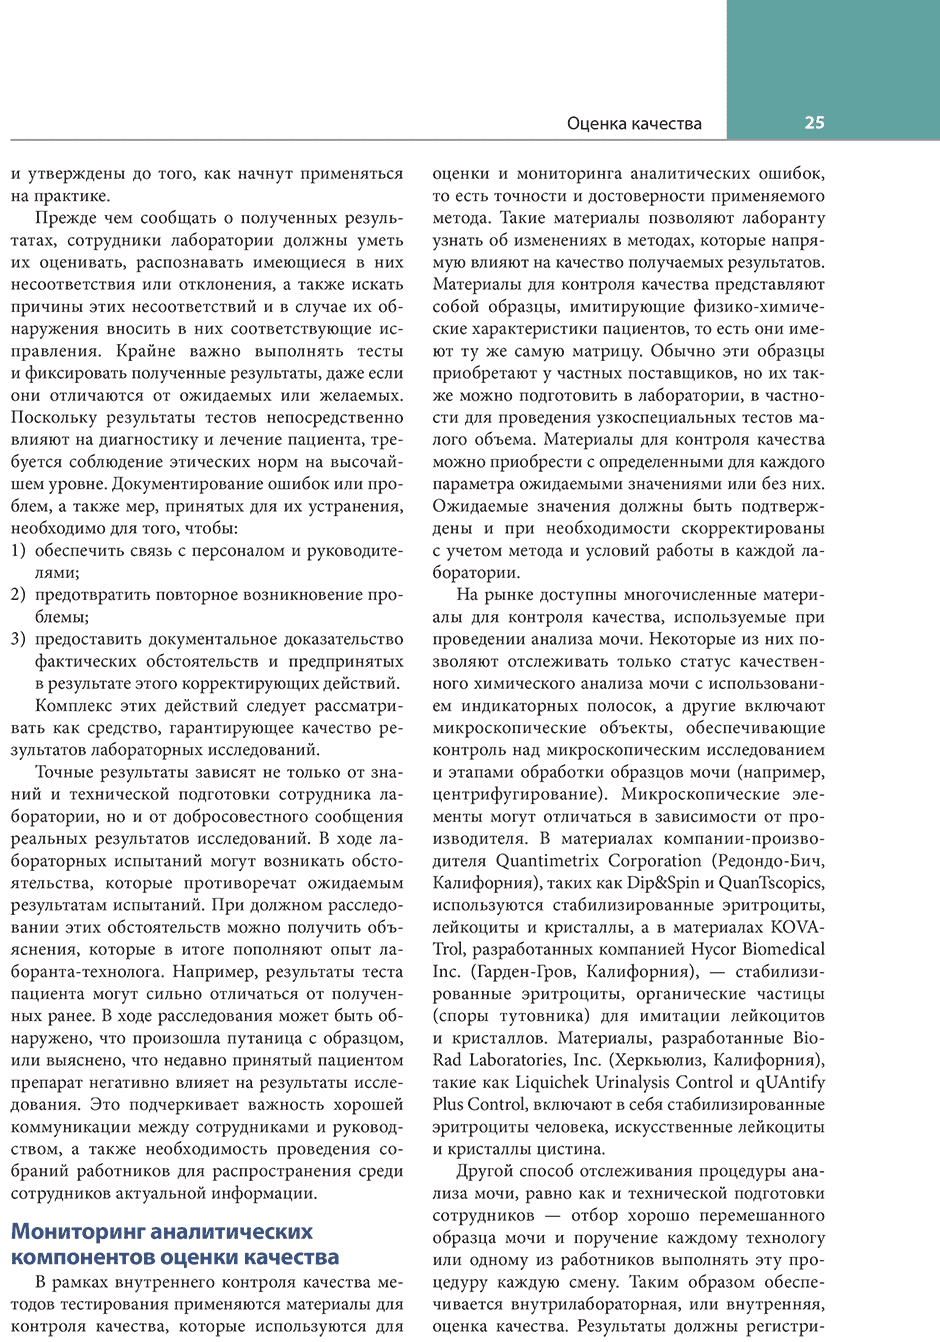 Пример страницы из книги "Клинико-лабораторный анализ мочи и биологических жидкостей" - Бранзел Н. А.